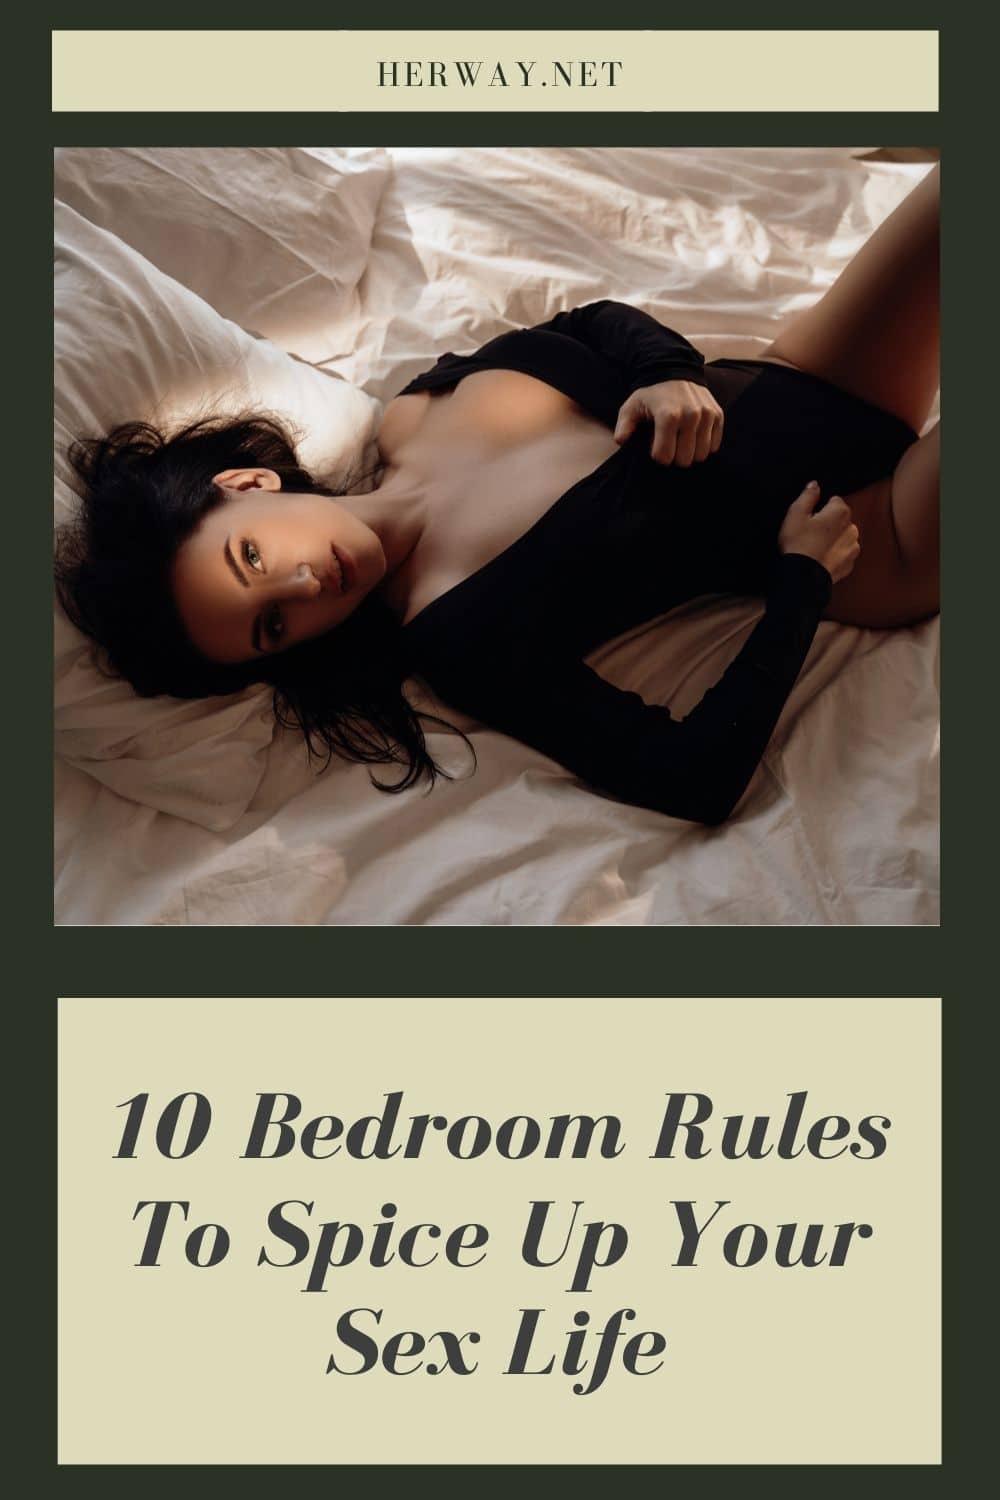 10 regole in camera da letto per rendere più vivace la vostra vita sessuale